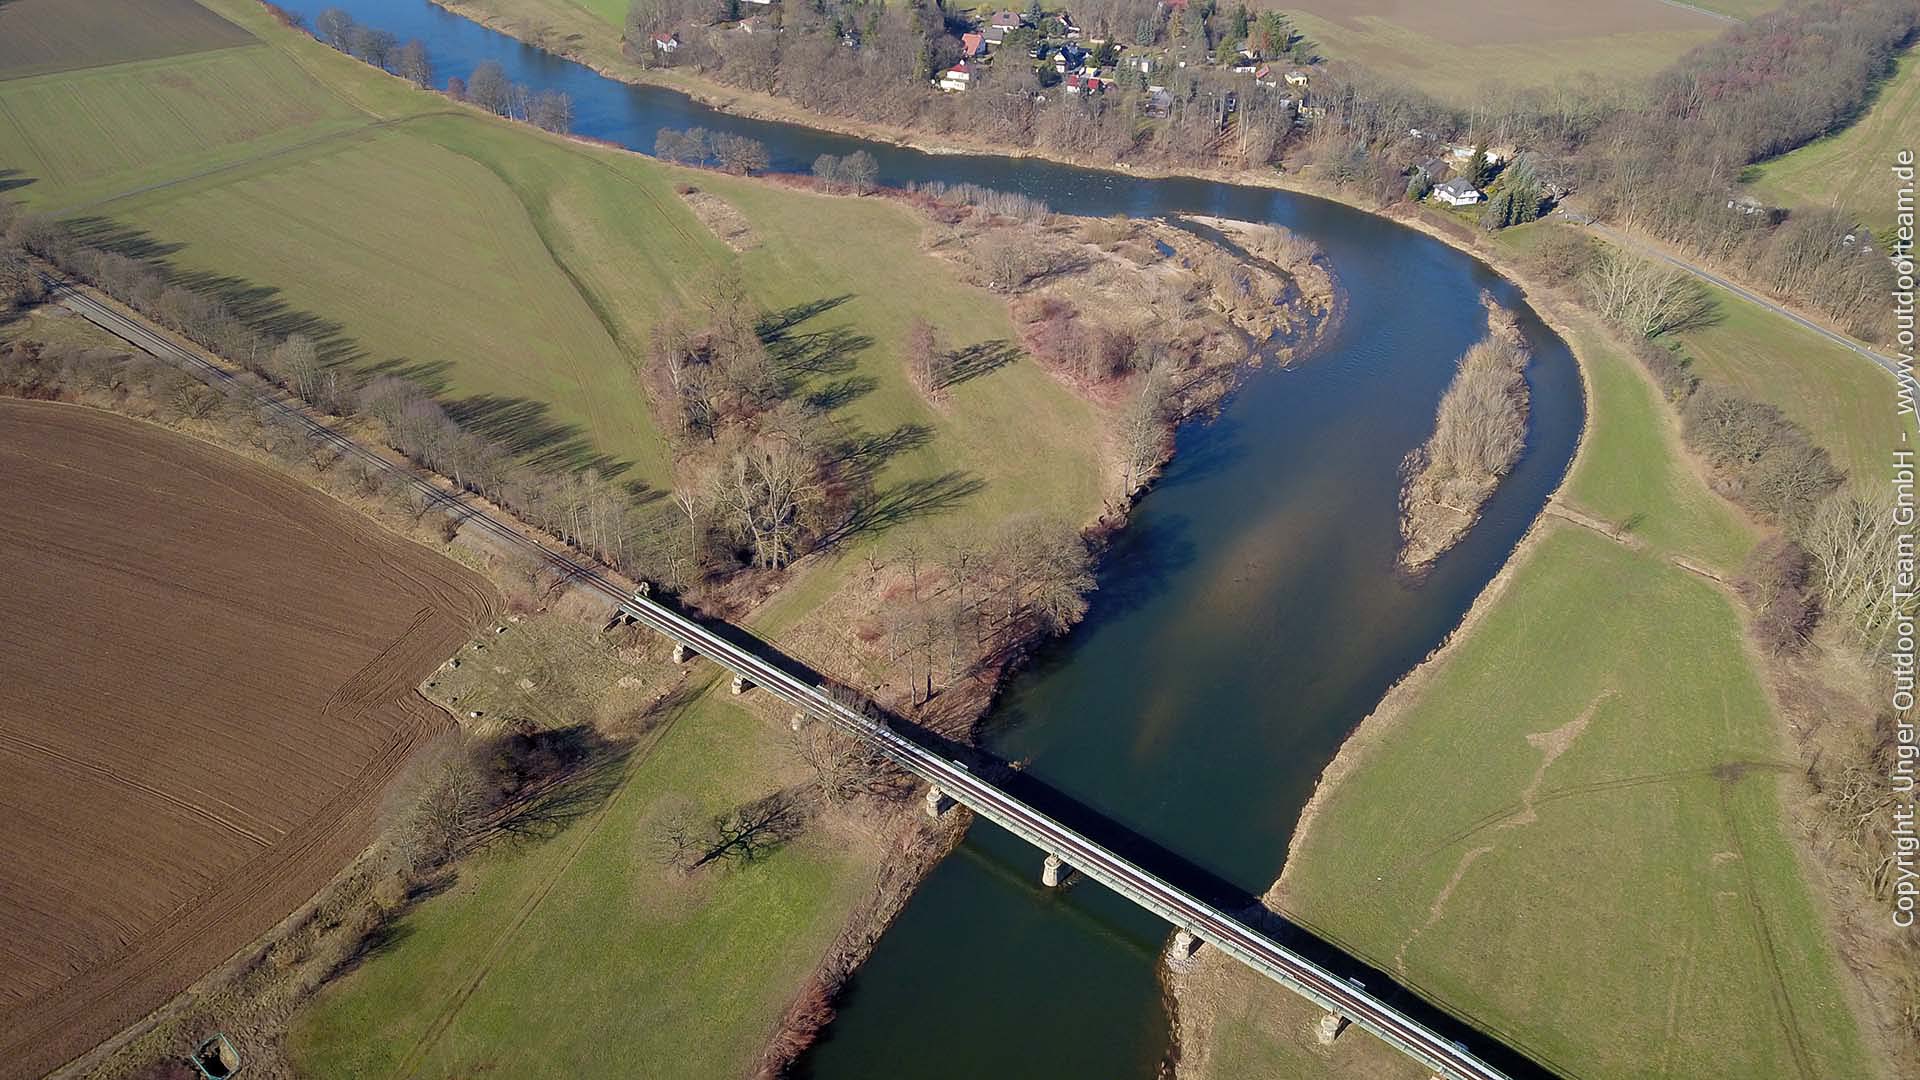 Etwa 2km flussab der Muldenvereinigung erreicht man die Bahnbrücke und große Stromschnelle nahe Kössern